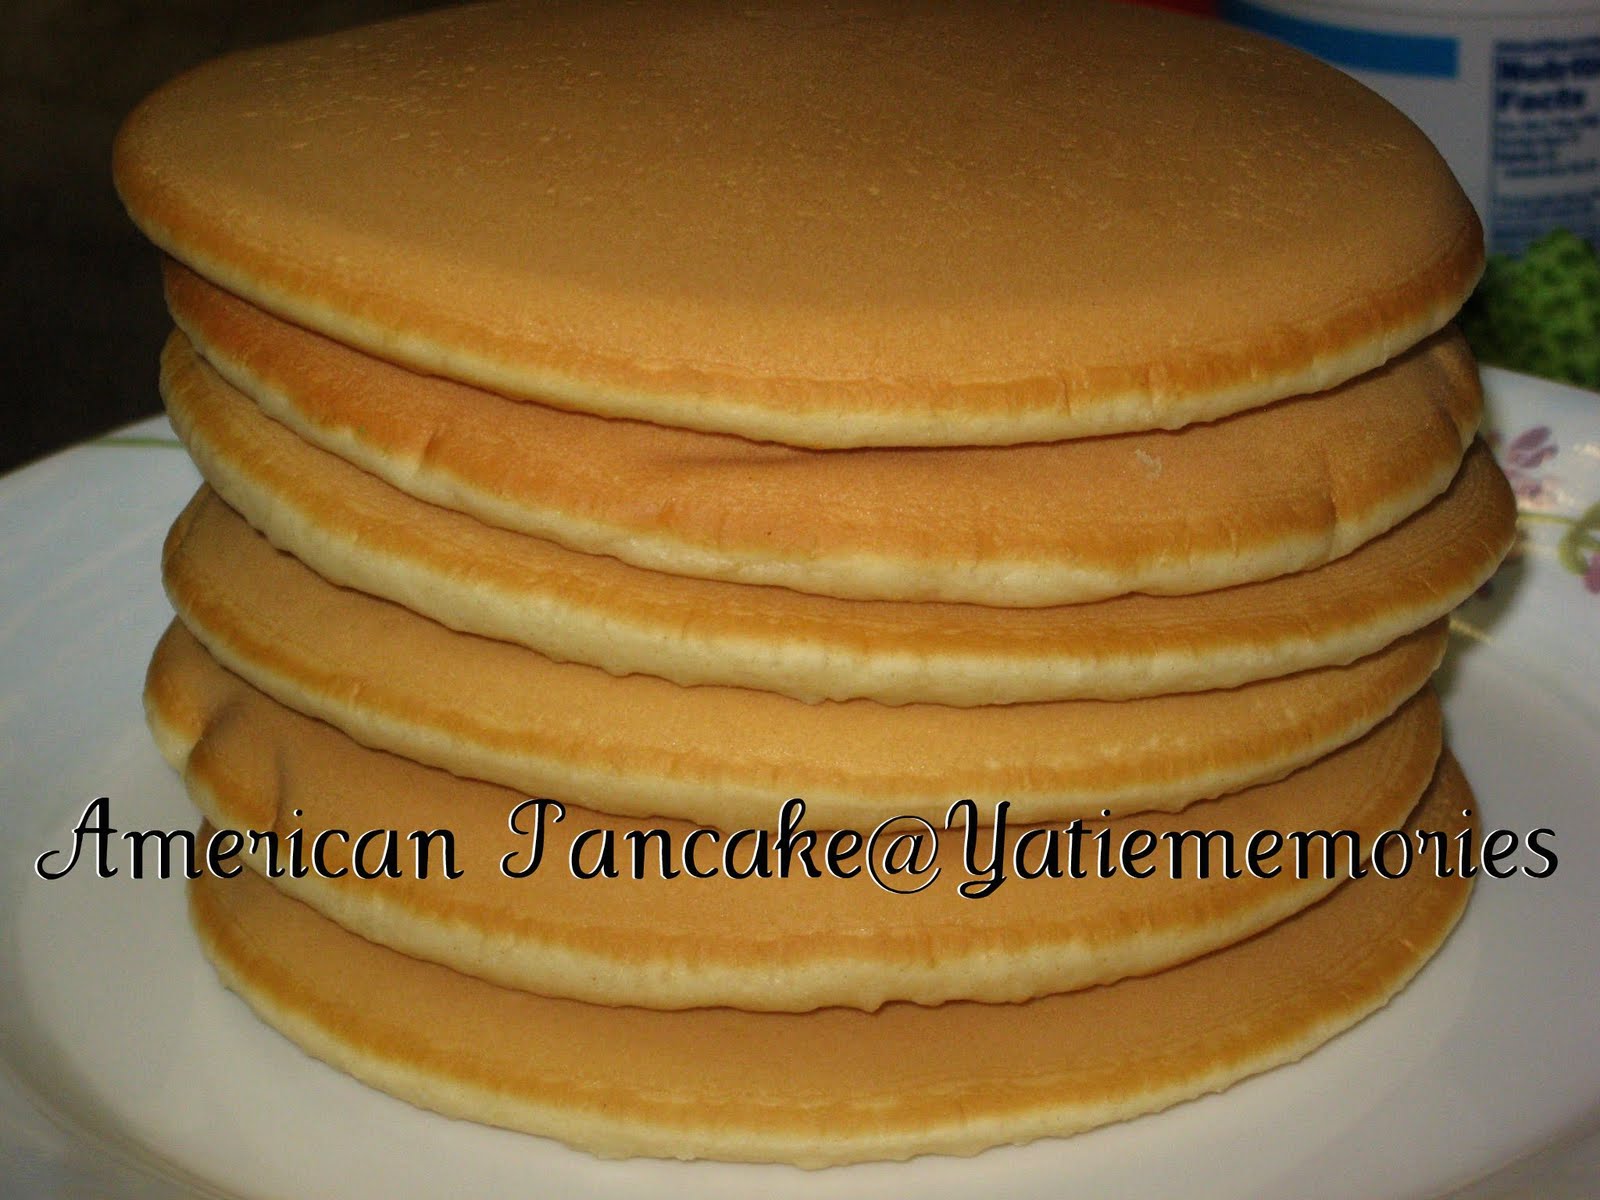 Resepi pancake